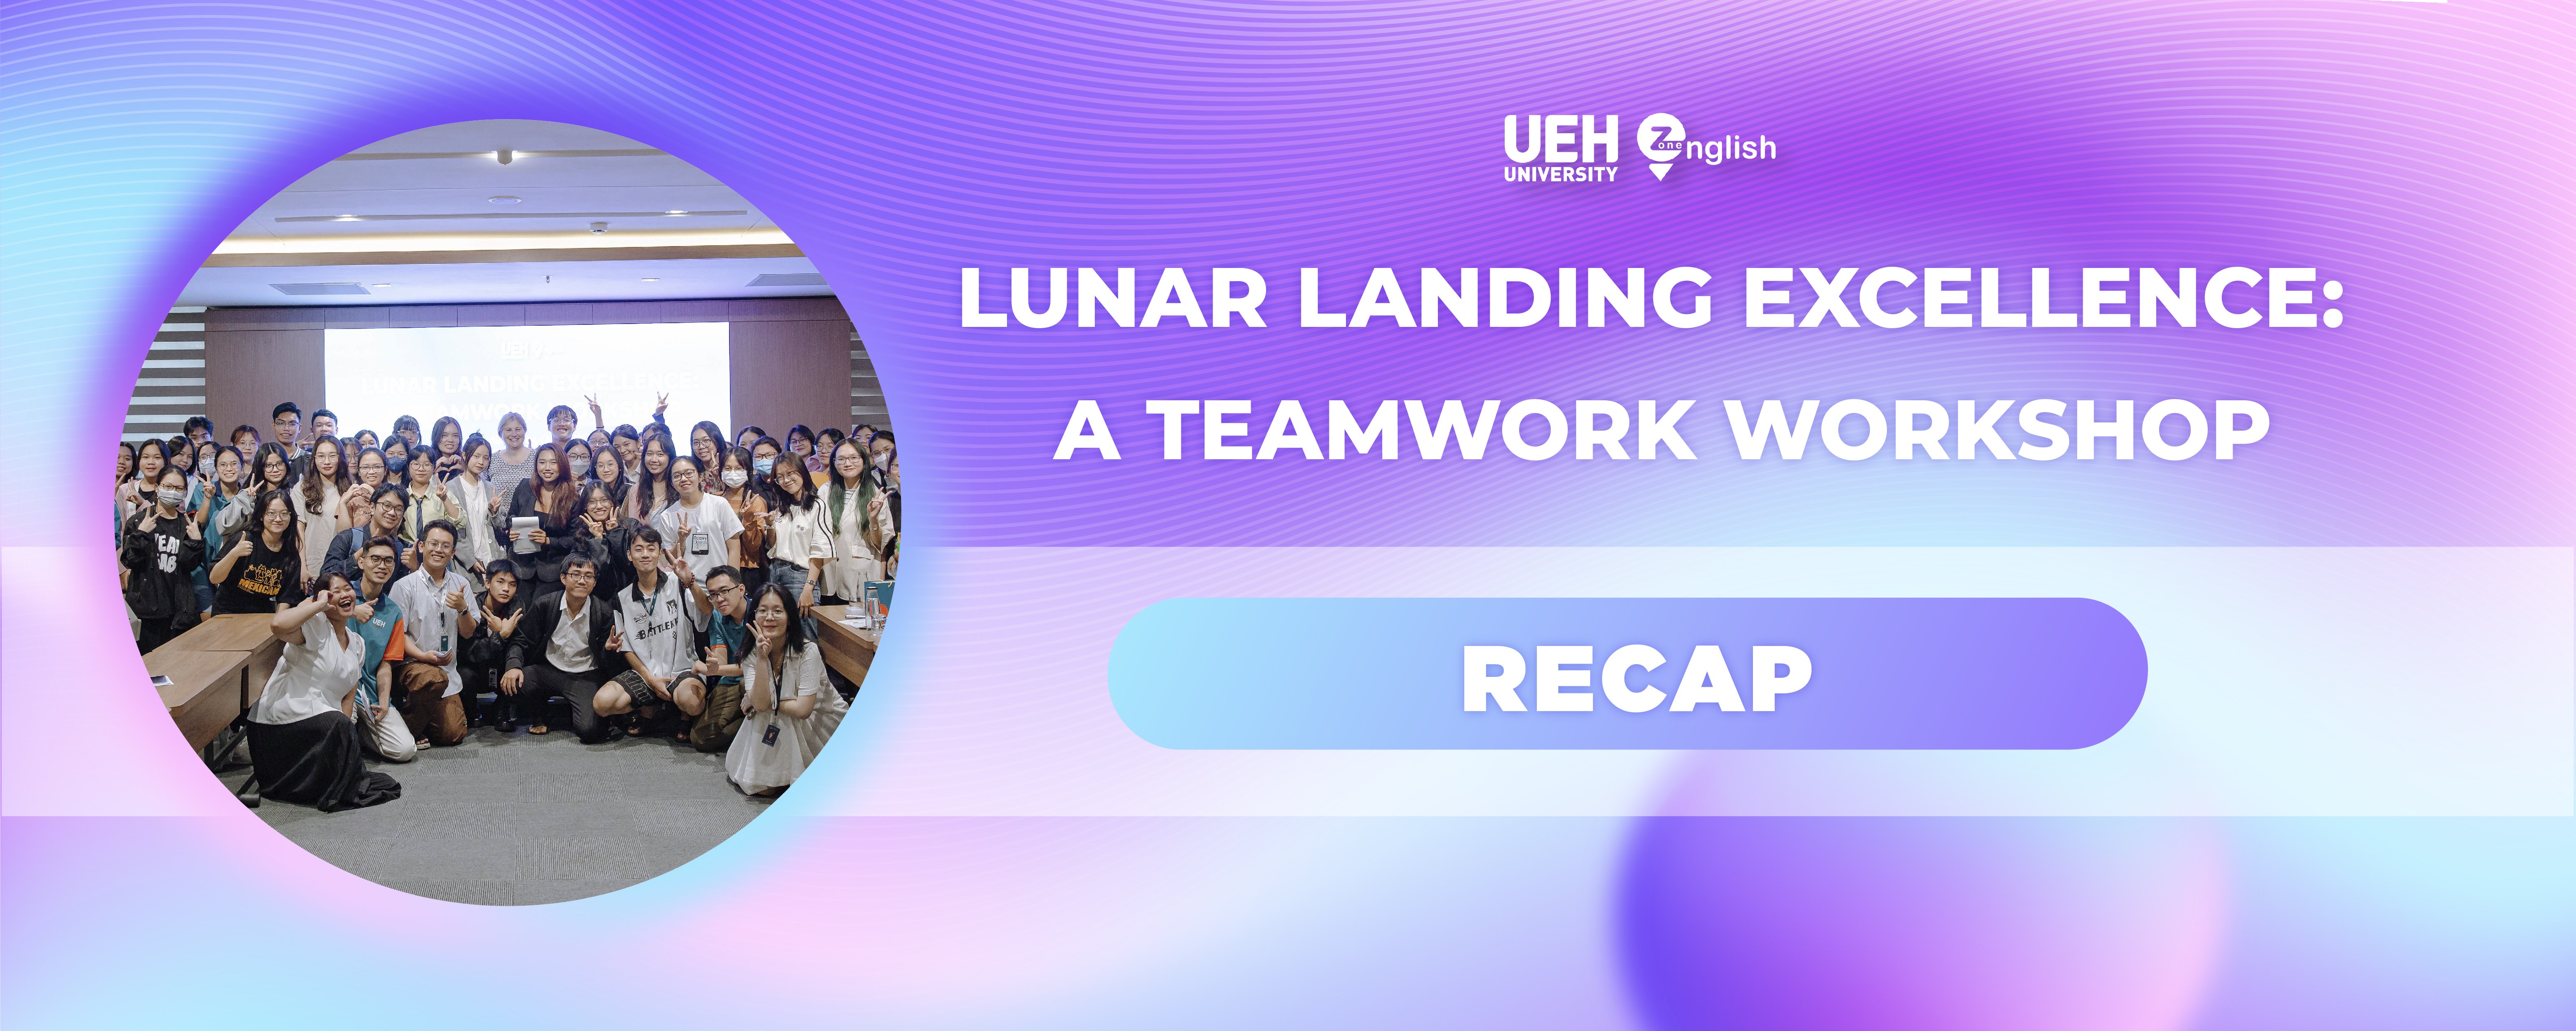 Teamwork Workshop: Lunar Landing Excellence

